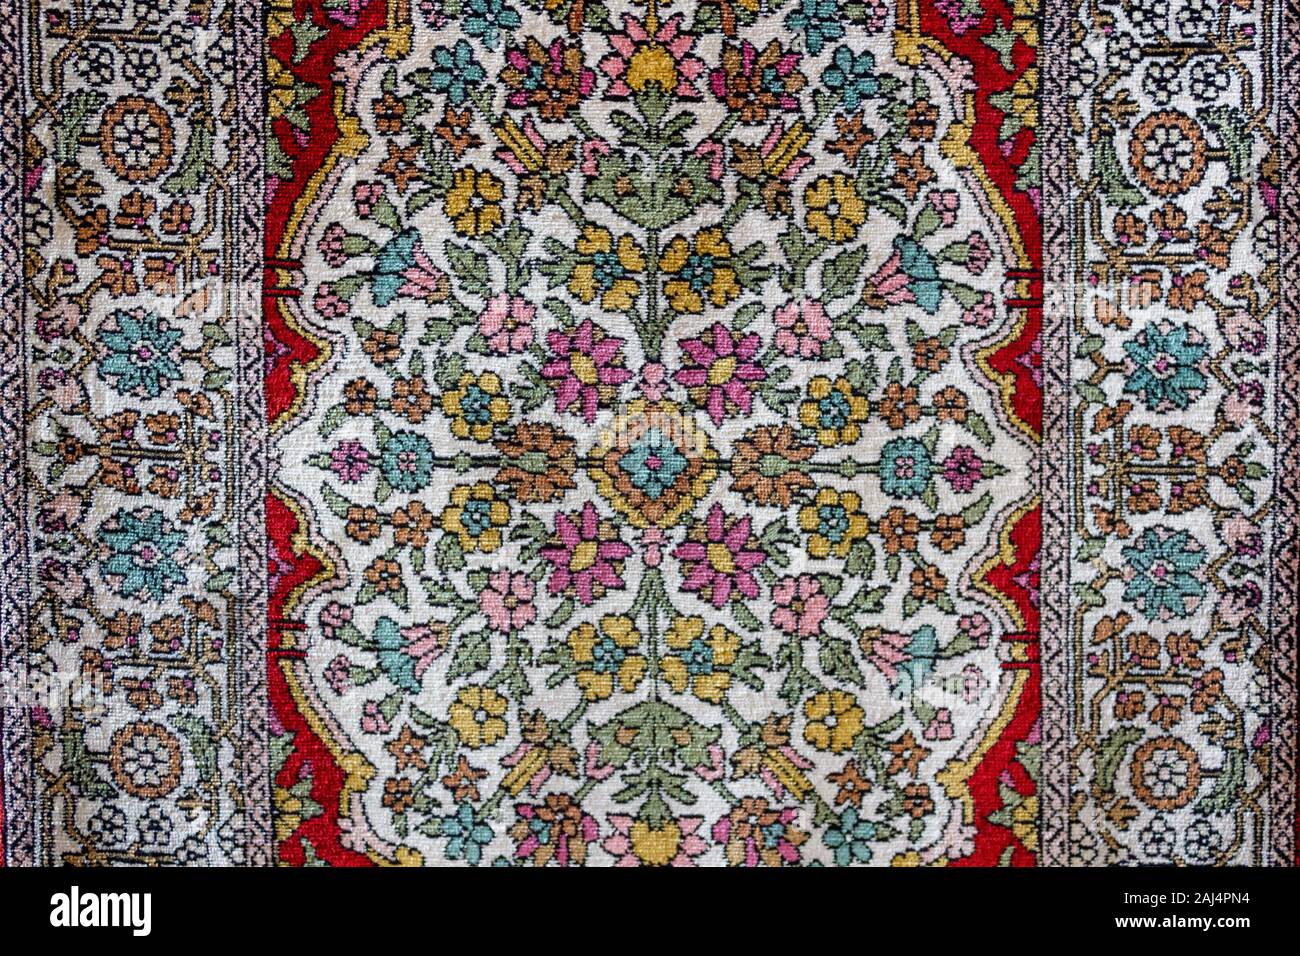 Seide Teppich Teppich Muster. Die traditionellen osmanischen und türkischen Seidenteppich Textur. Türkischen osmanischen Oriental folk Carpet Design Stockfoto